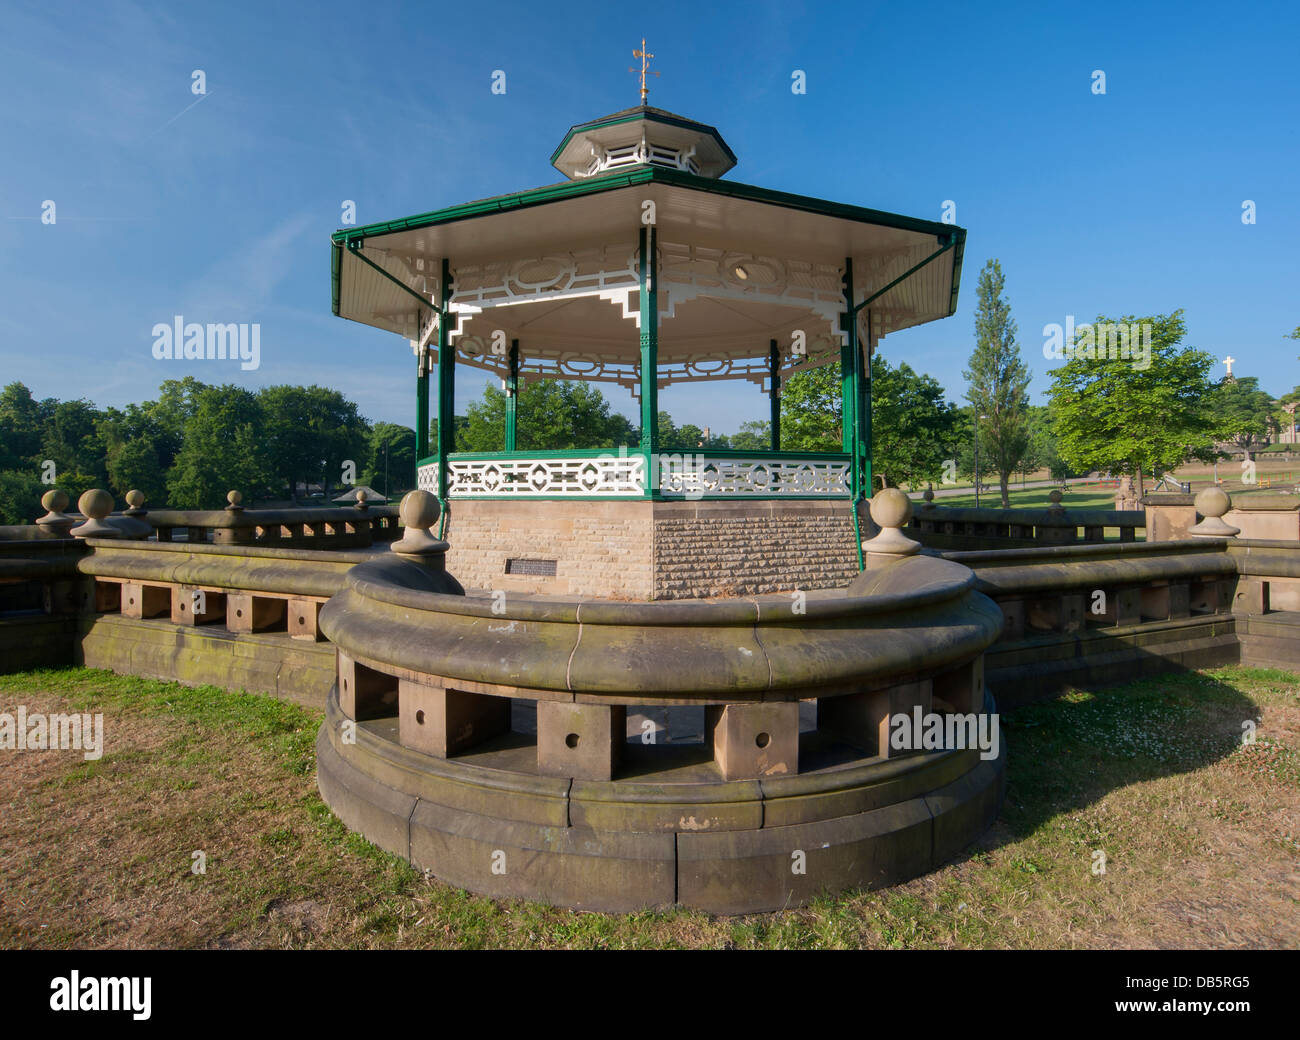 Dettaglio della pietra arenaria parete curva che circonda il bandstand a Greenhead park, Huddersfield Foto Stock